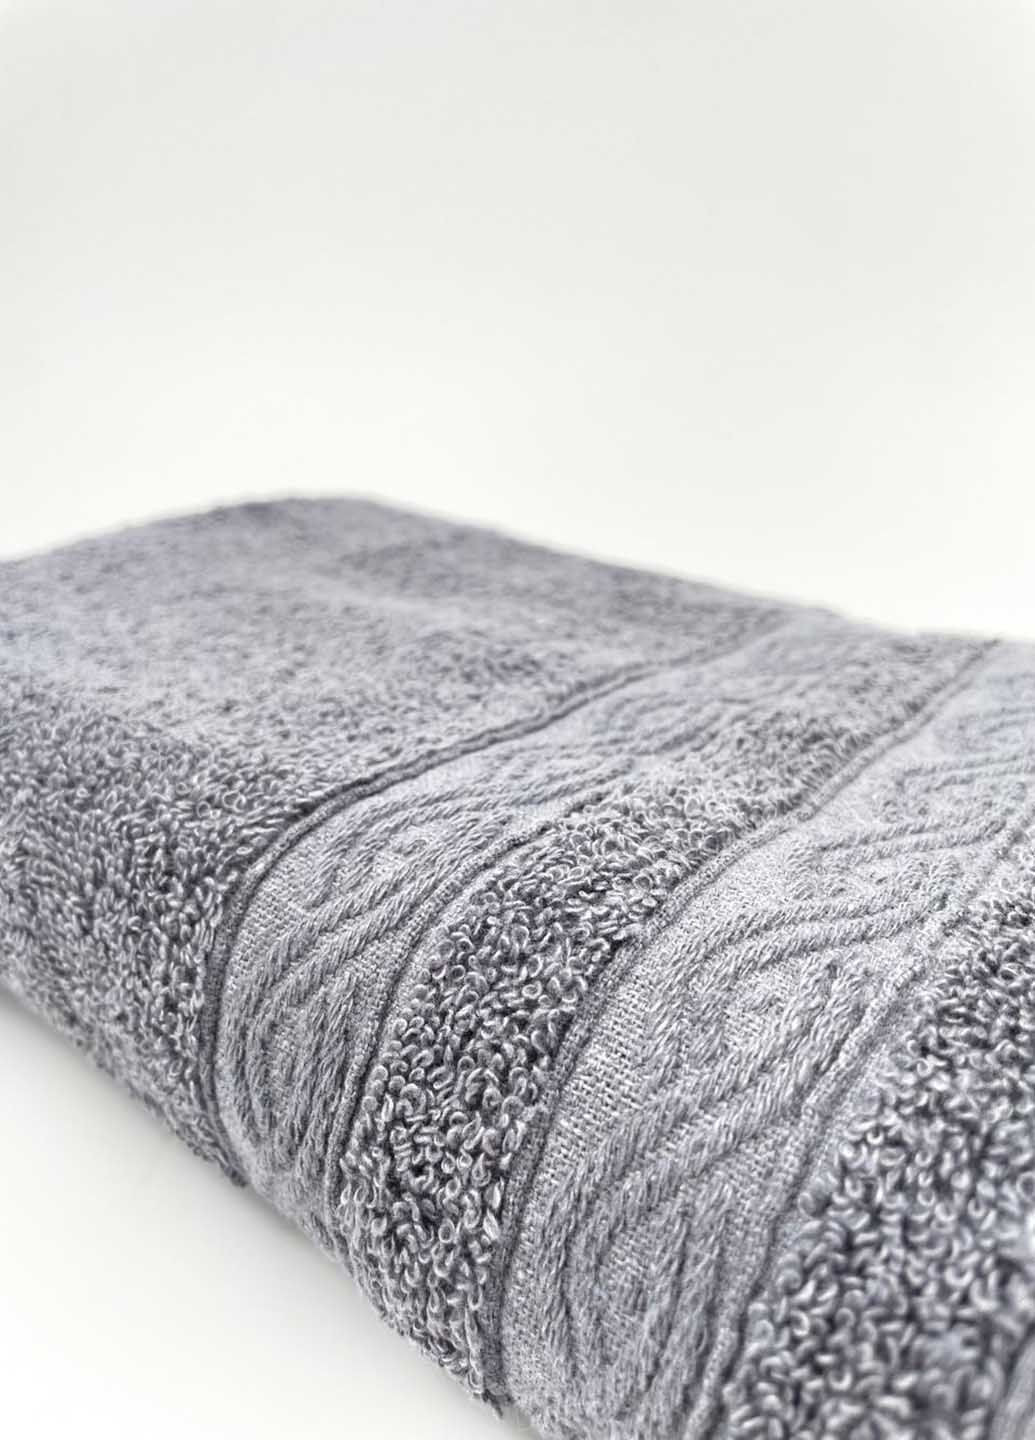 Homedec полотенце банное махровое 140х70 см абстрактный темно-серый производство - Турция